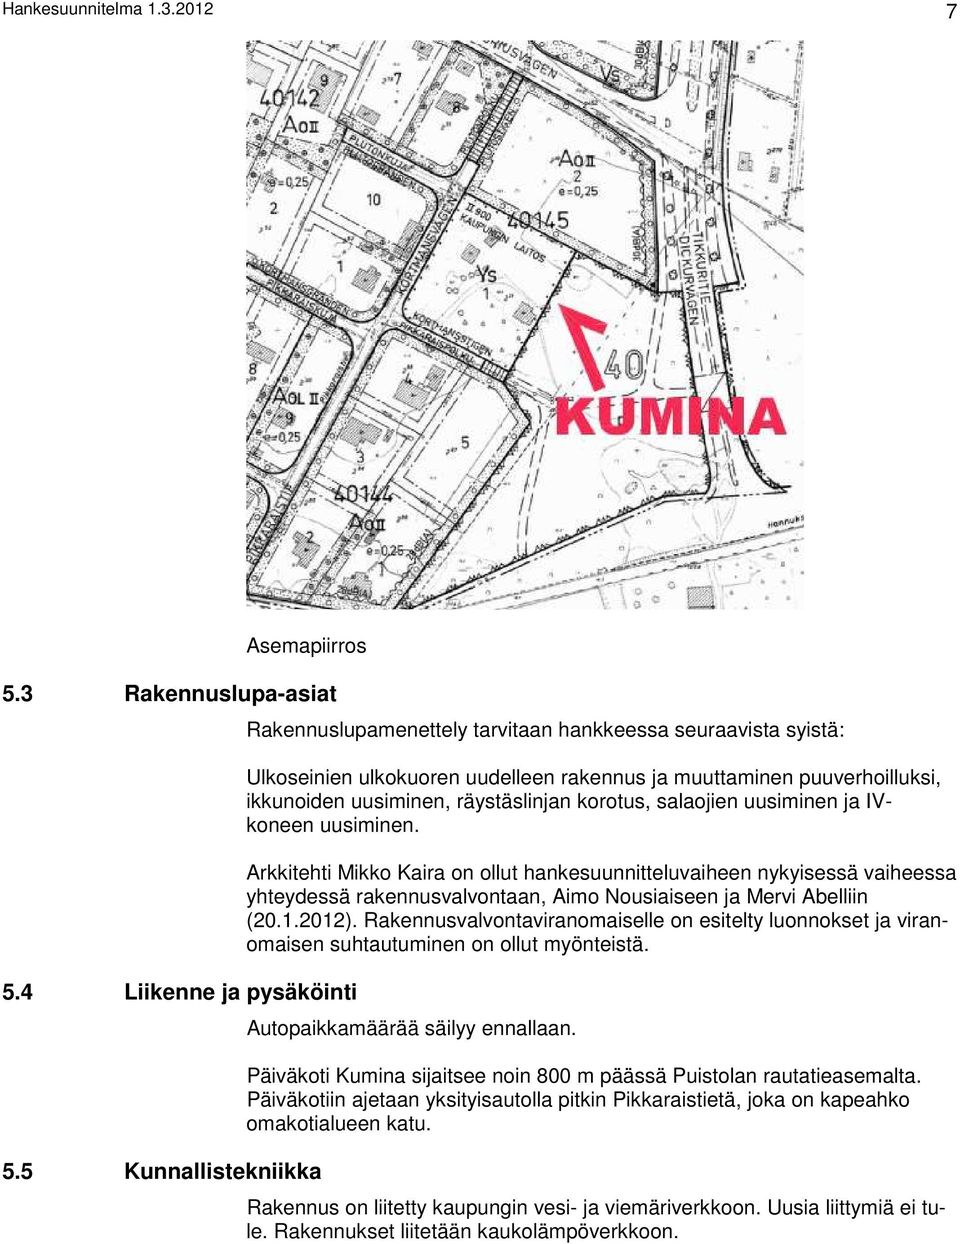 korotus, salaojien uusiminen ja IVkoneen uusiminen. Arkkitehti Mikko Kaira on ollut hankesuunnitteluvaiheen nykyisessä vaiheessa yhteydessä rakennusvalvontaan, Aimo Nousiaiseen ja Mervi Abelliin (20.